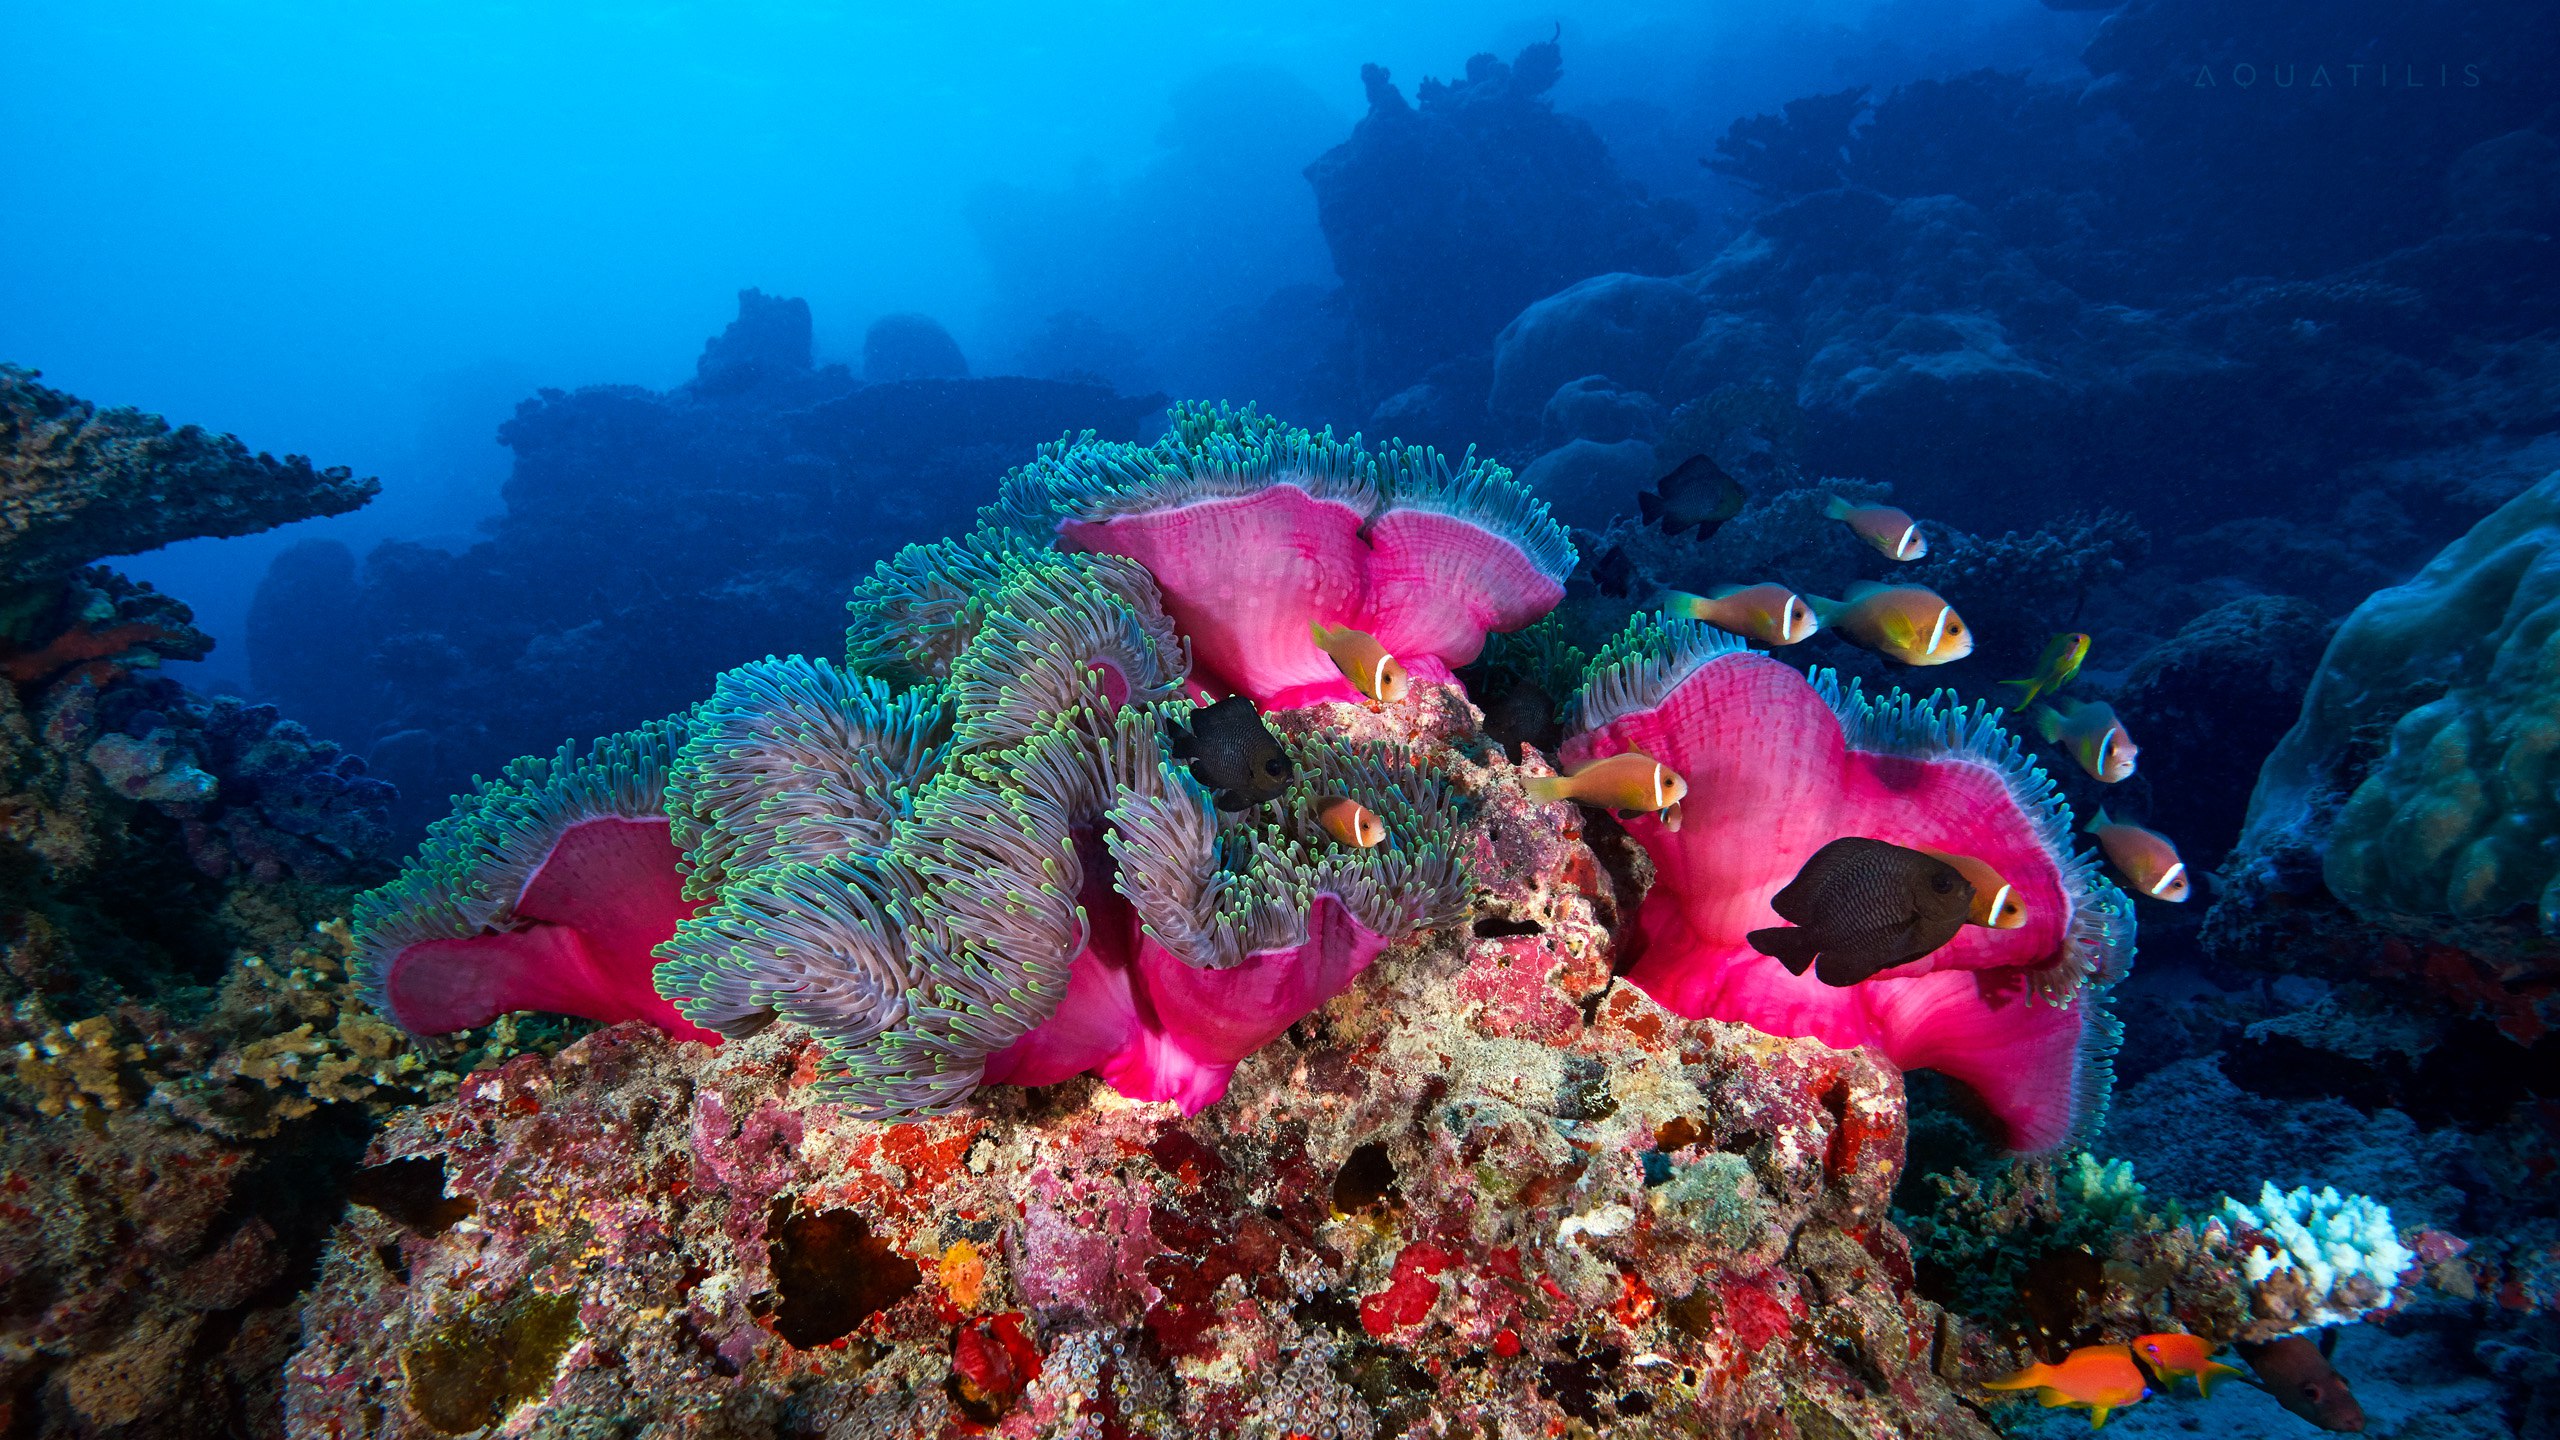 подводный мир океанов и морей